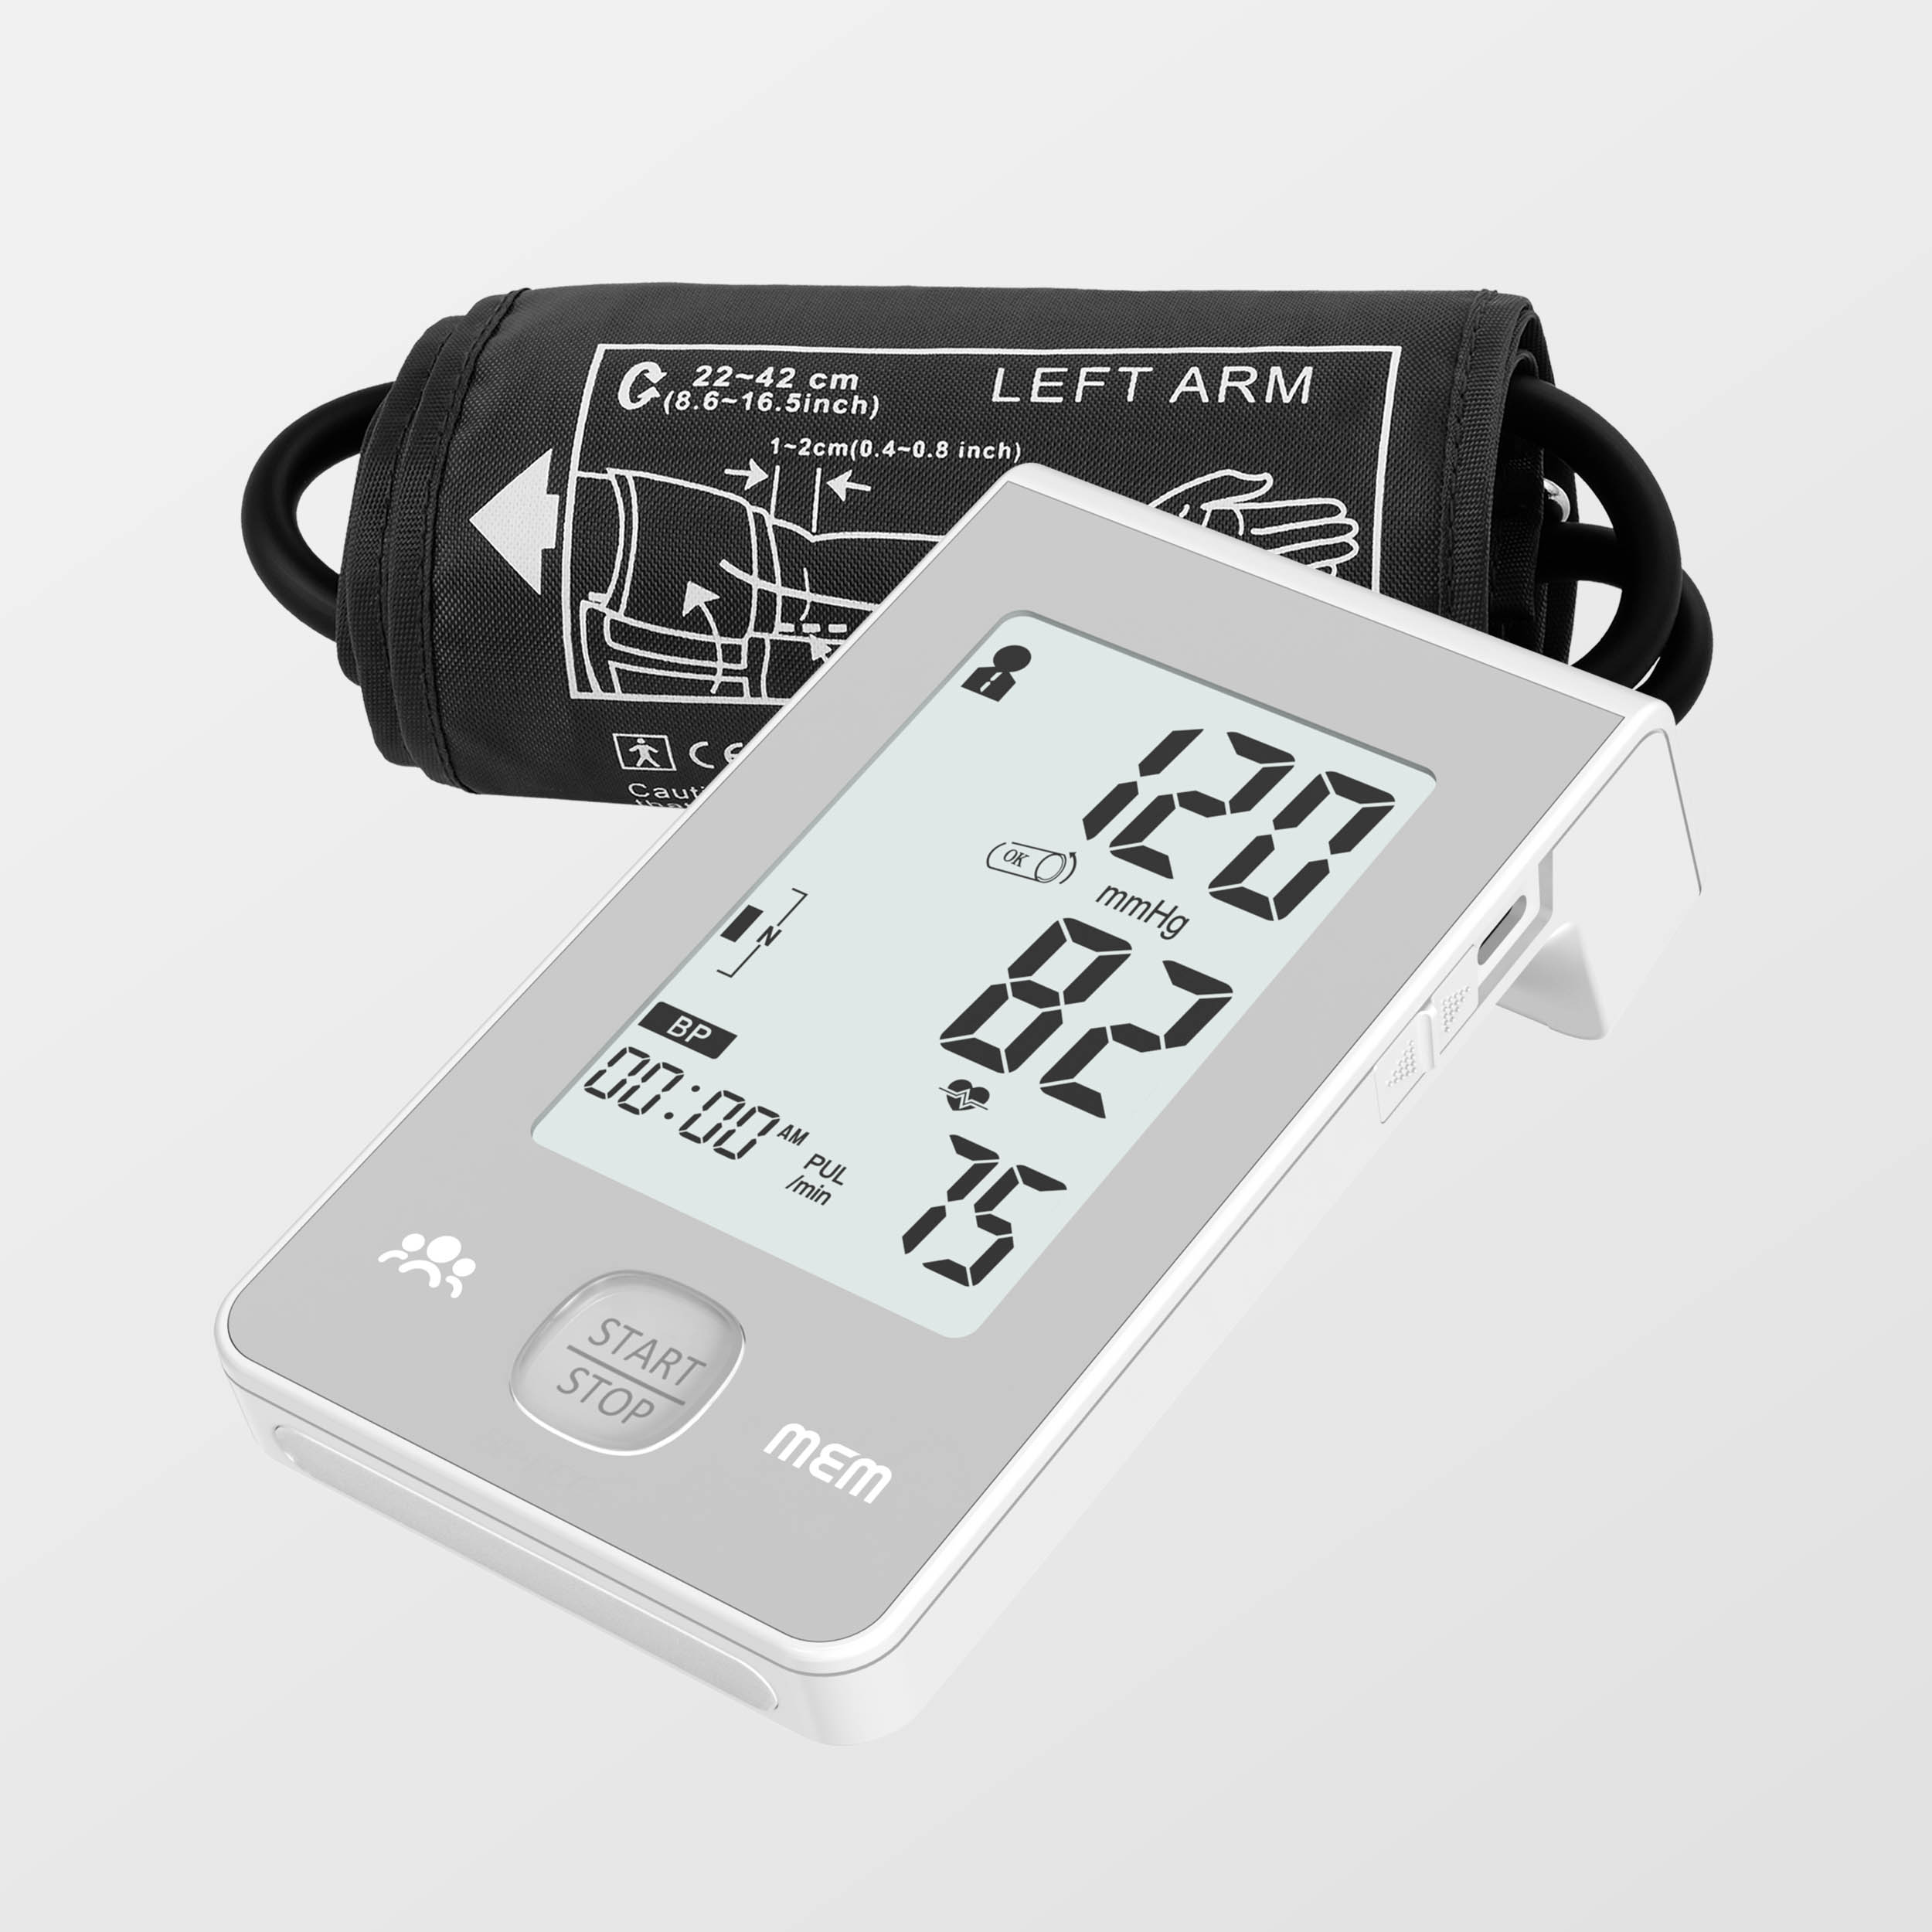 Ekstra Large Display Dual Power Supply Intelligent Blood Pressure Monitor mei Ecg